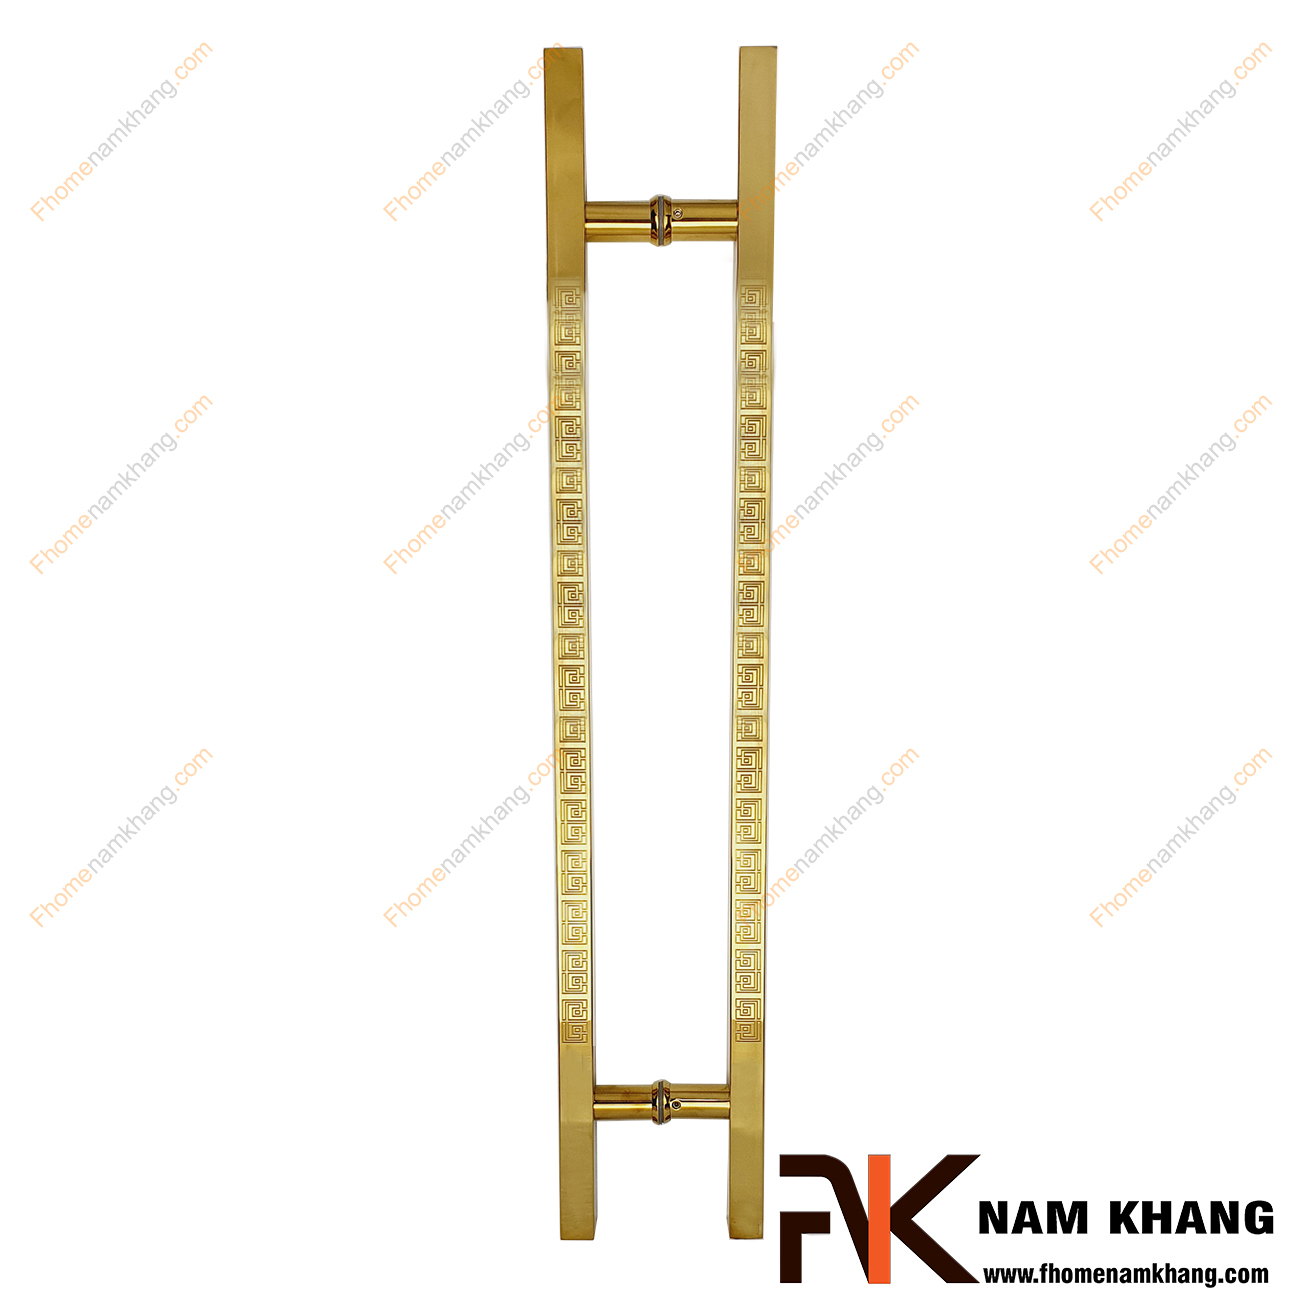 Tay nắm cửa chính dạng thanh vuông màu vàng bóng NK901L-150V304 được sản xuất từ chất liệu cao cấp, với kích thước lớn chuyên dùng cho cửa 2 hoặc 4 cánh, cửa gỗ cao cấp, cửa kính, cửa nhôm,...